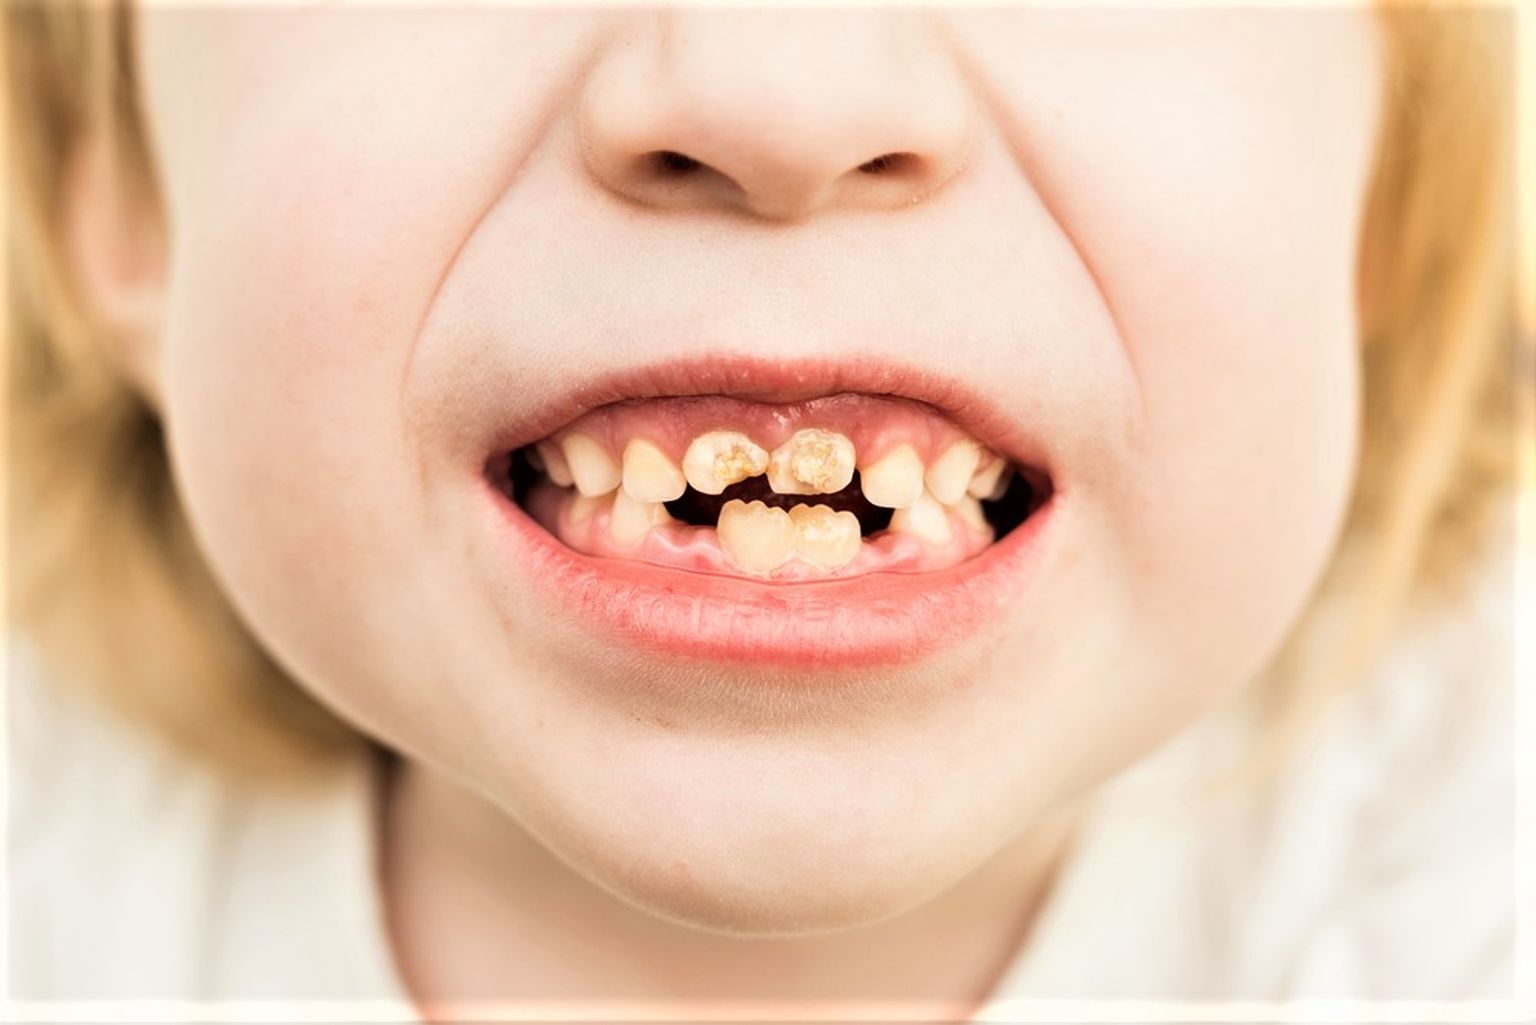 Katkised hambad kahjustavad tervist. Pilt on illustratiivne.